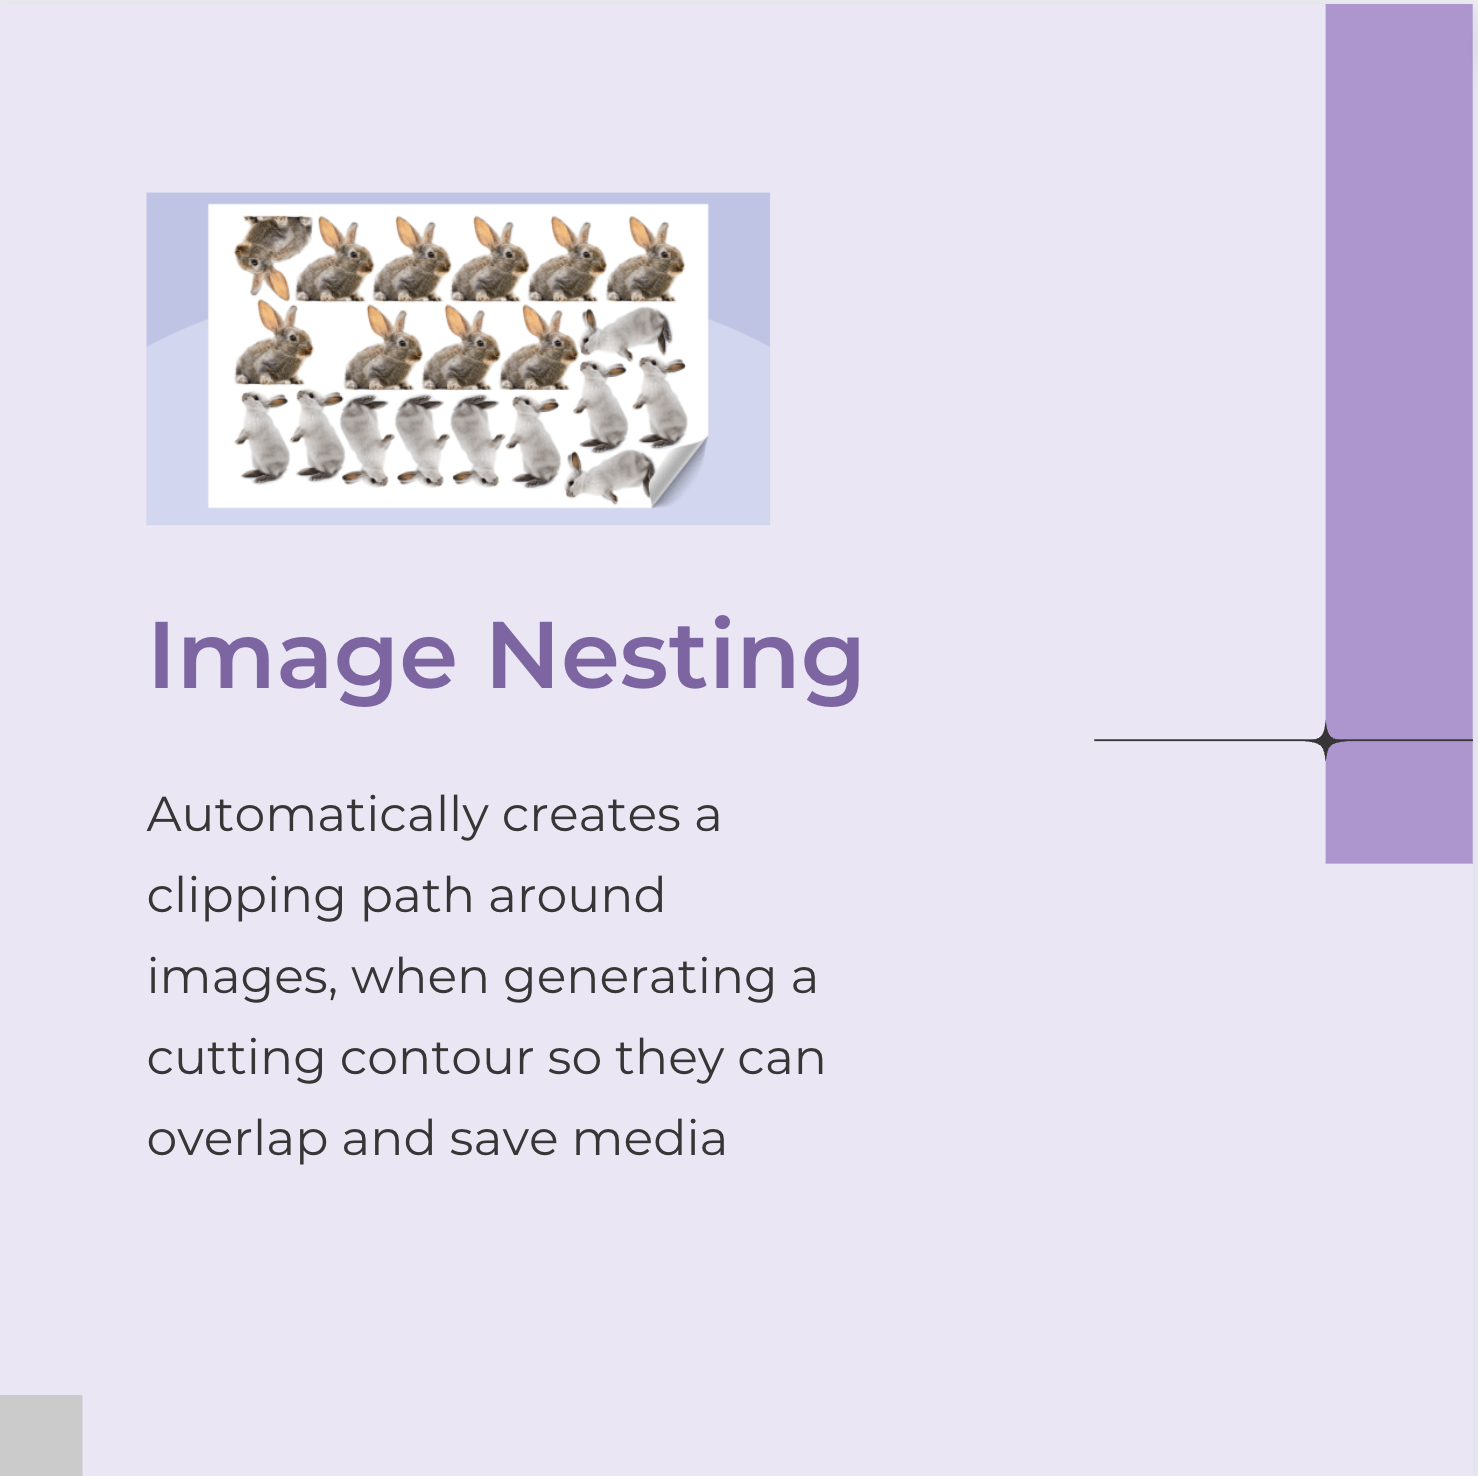 Image Nesting